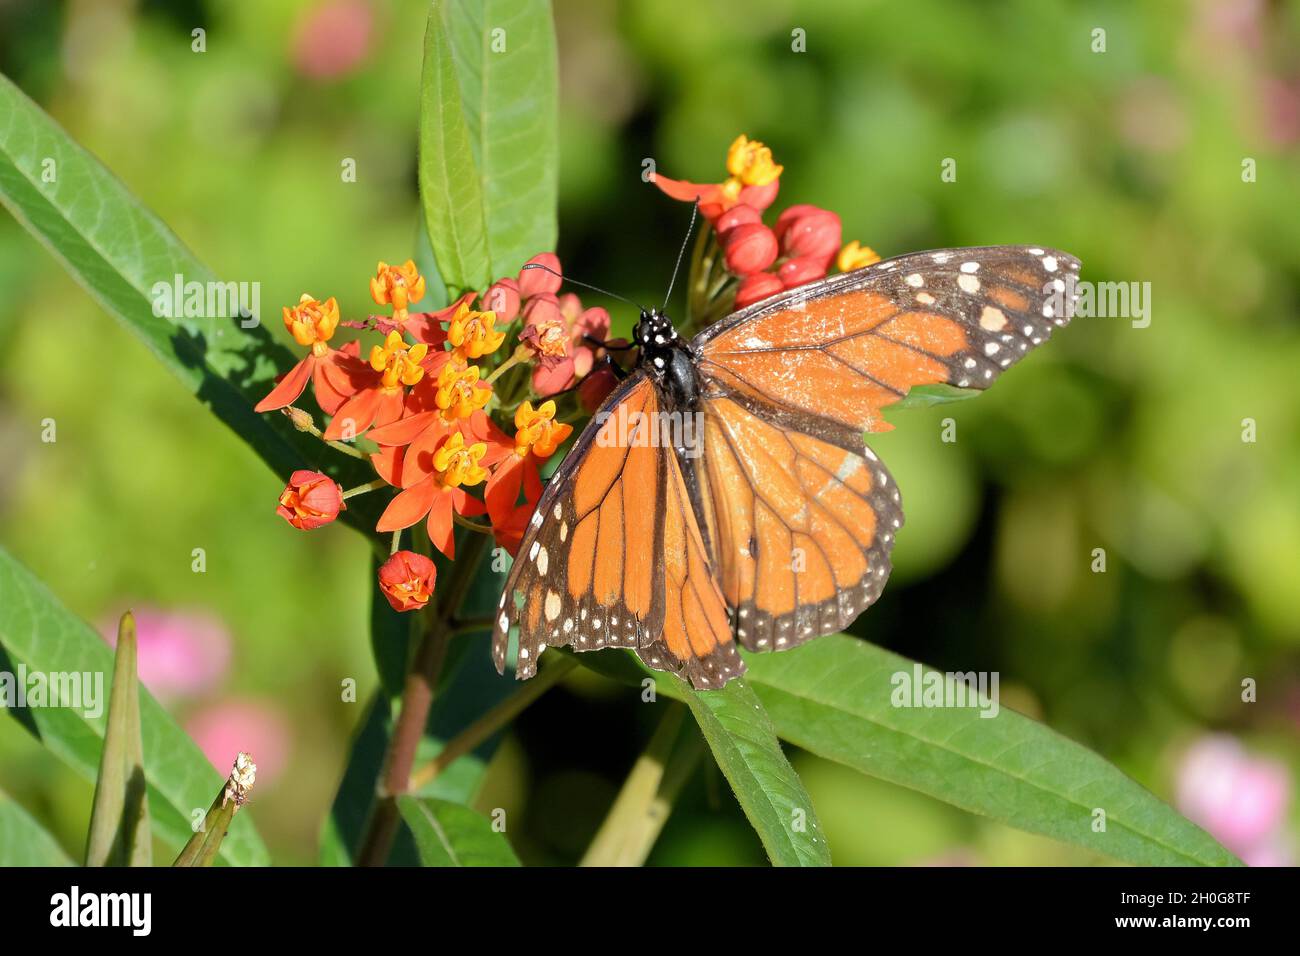 Una mariposa monarca (Danaus plexippus) con delicadas alas de terracota naranja se extienden abiertas, sentados sobre pequeñas flores, sobre un fondo verde Foto de stock